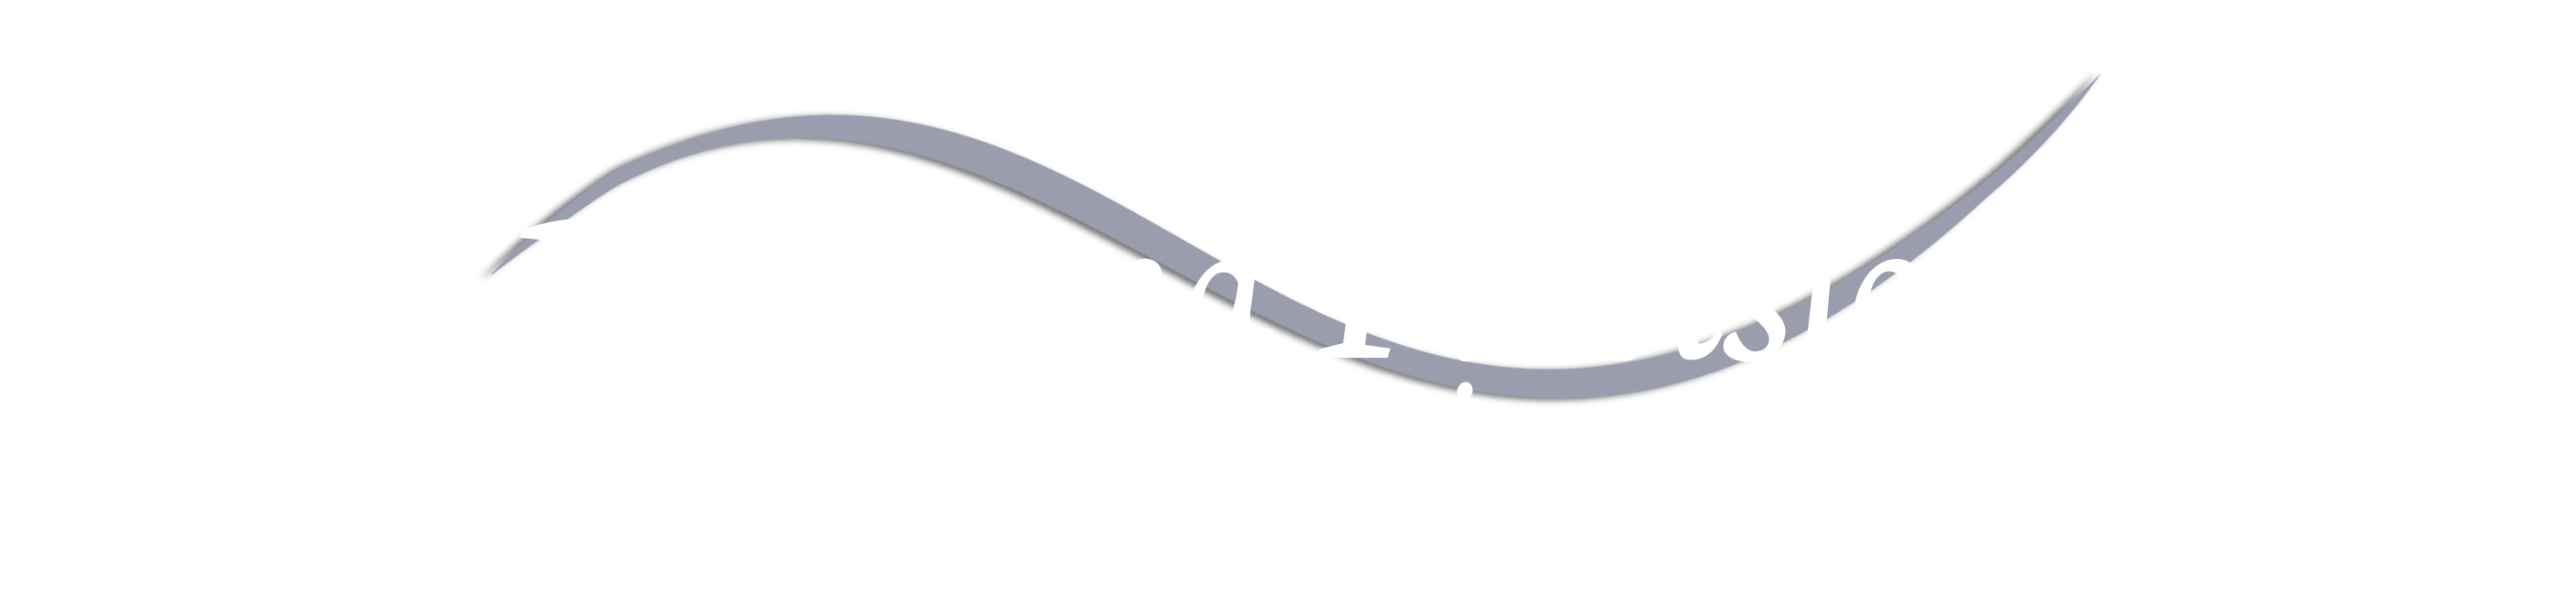 PRIDE AND PRECISION PIANO SERVICE